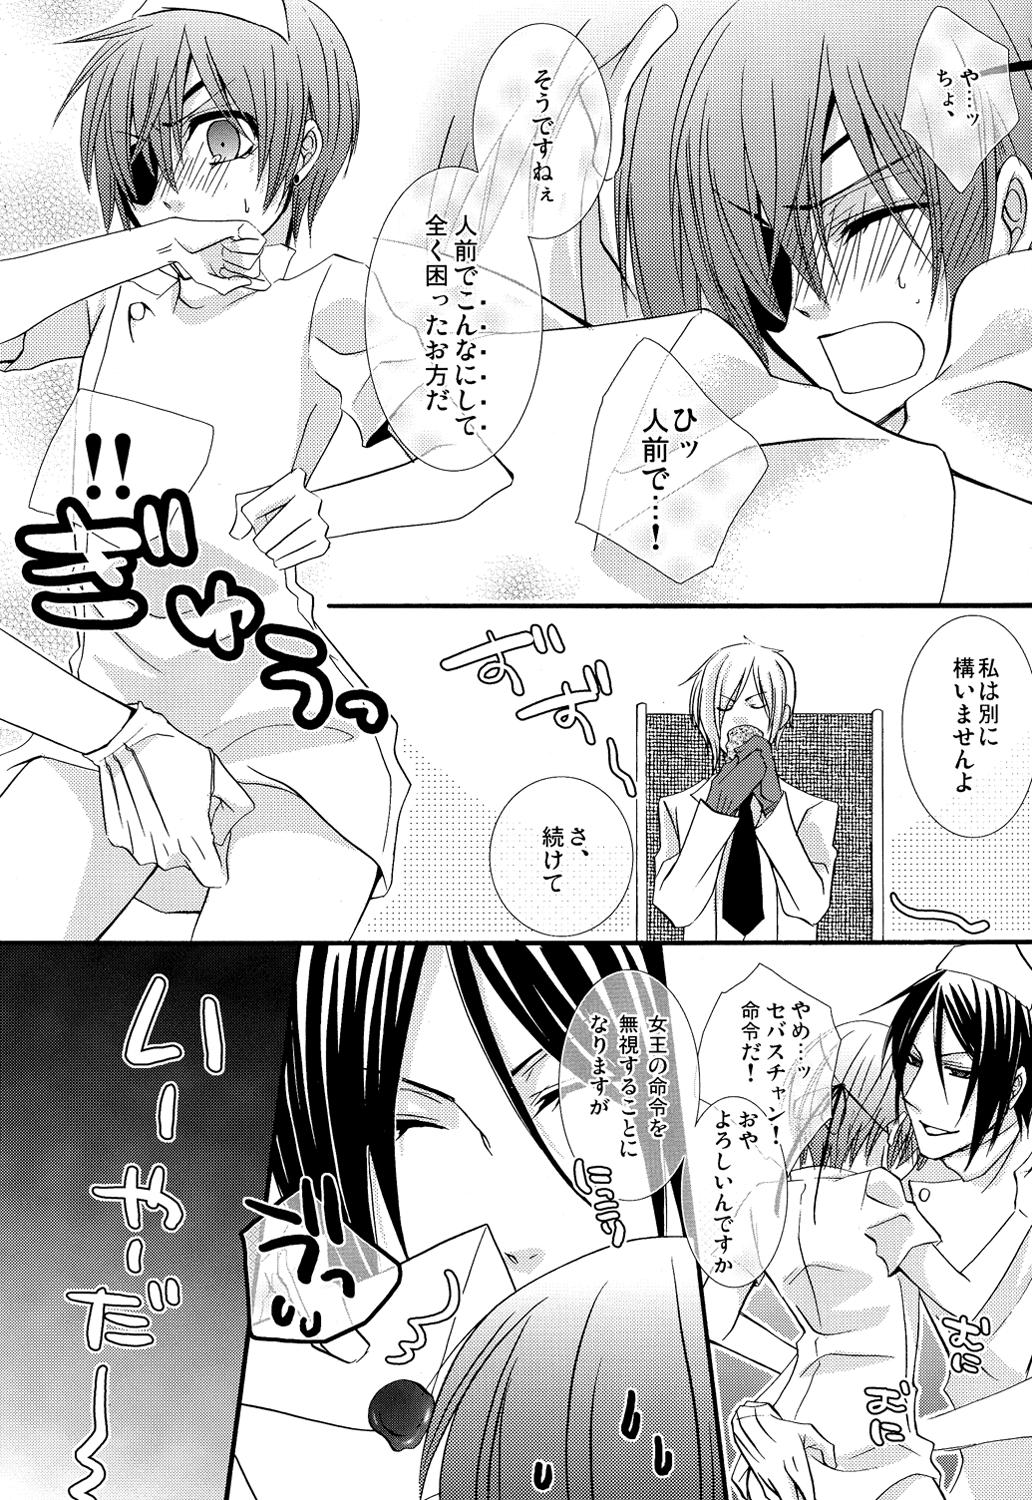 Dick Sucking Re;Chocolat - Black butler | kuroshitsuji Love - Page 8